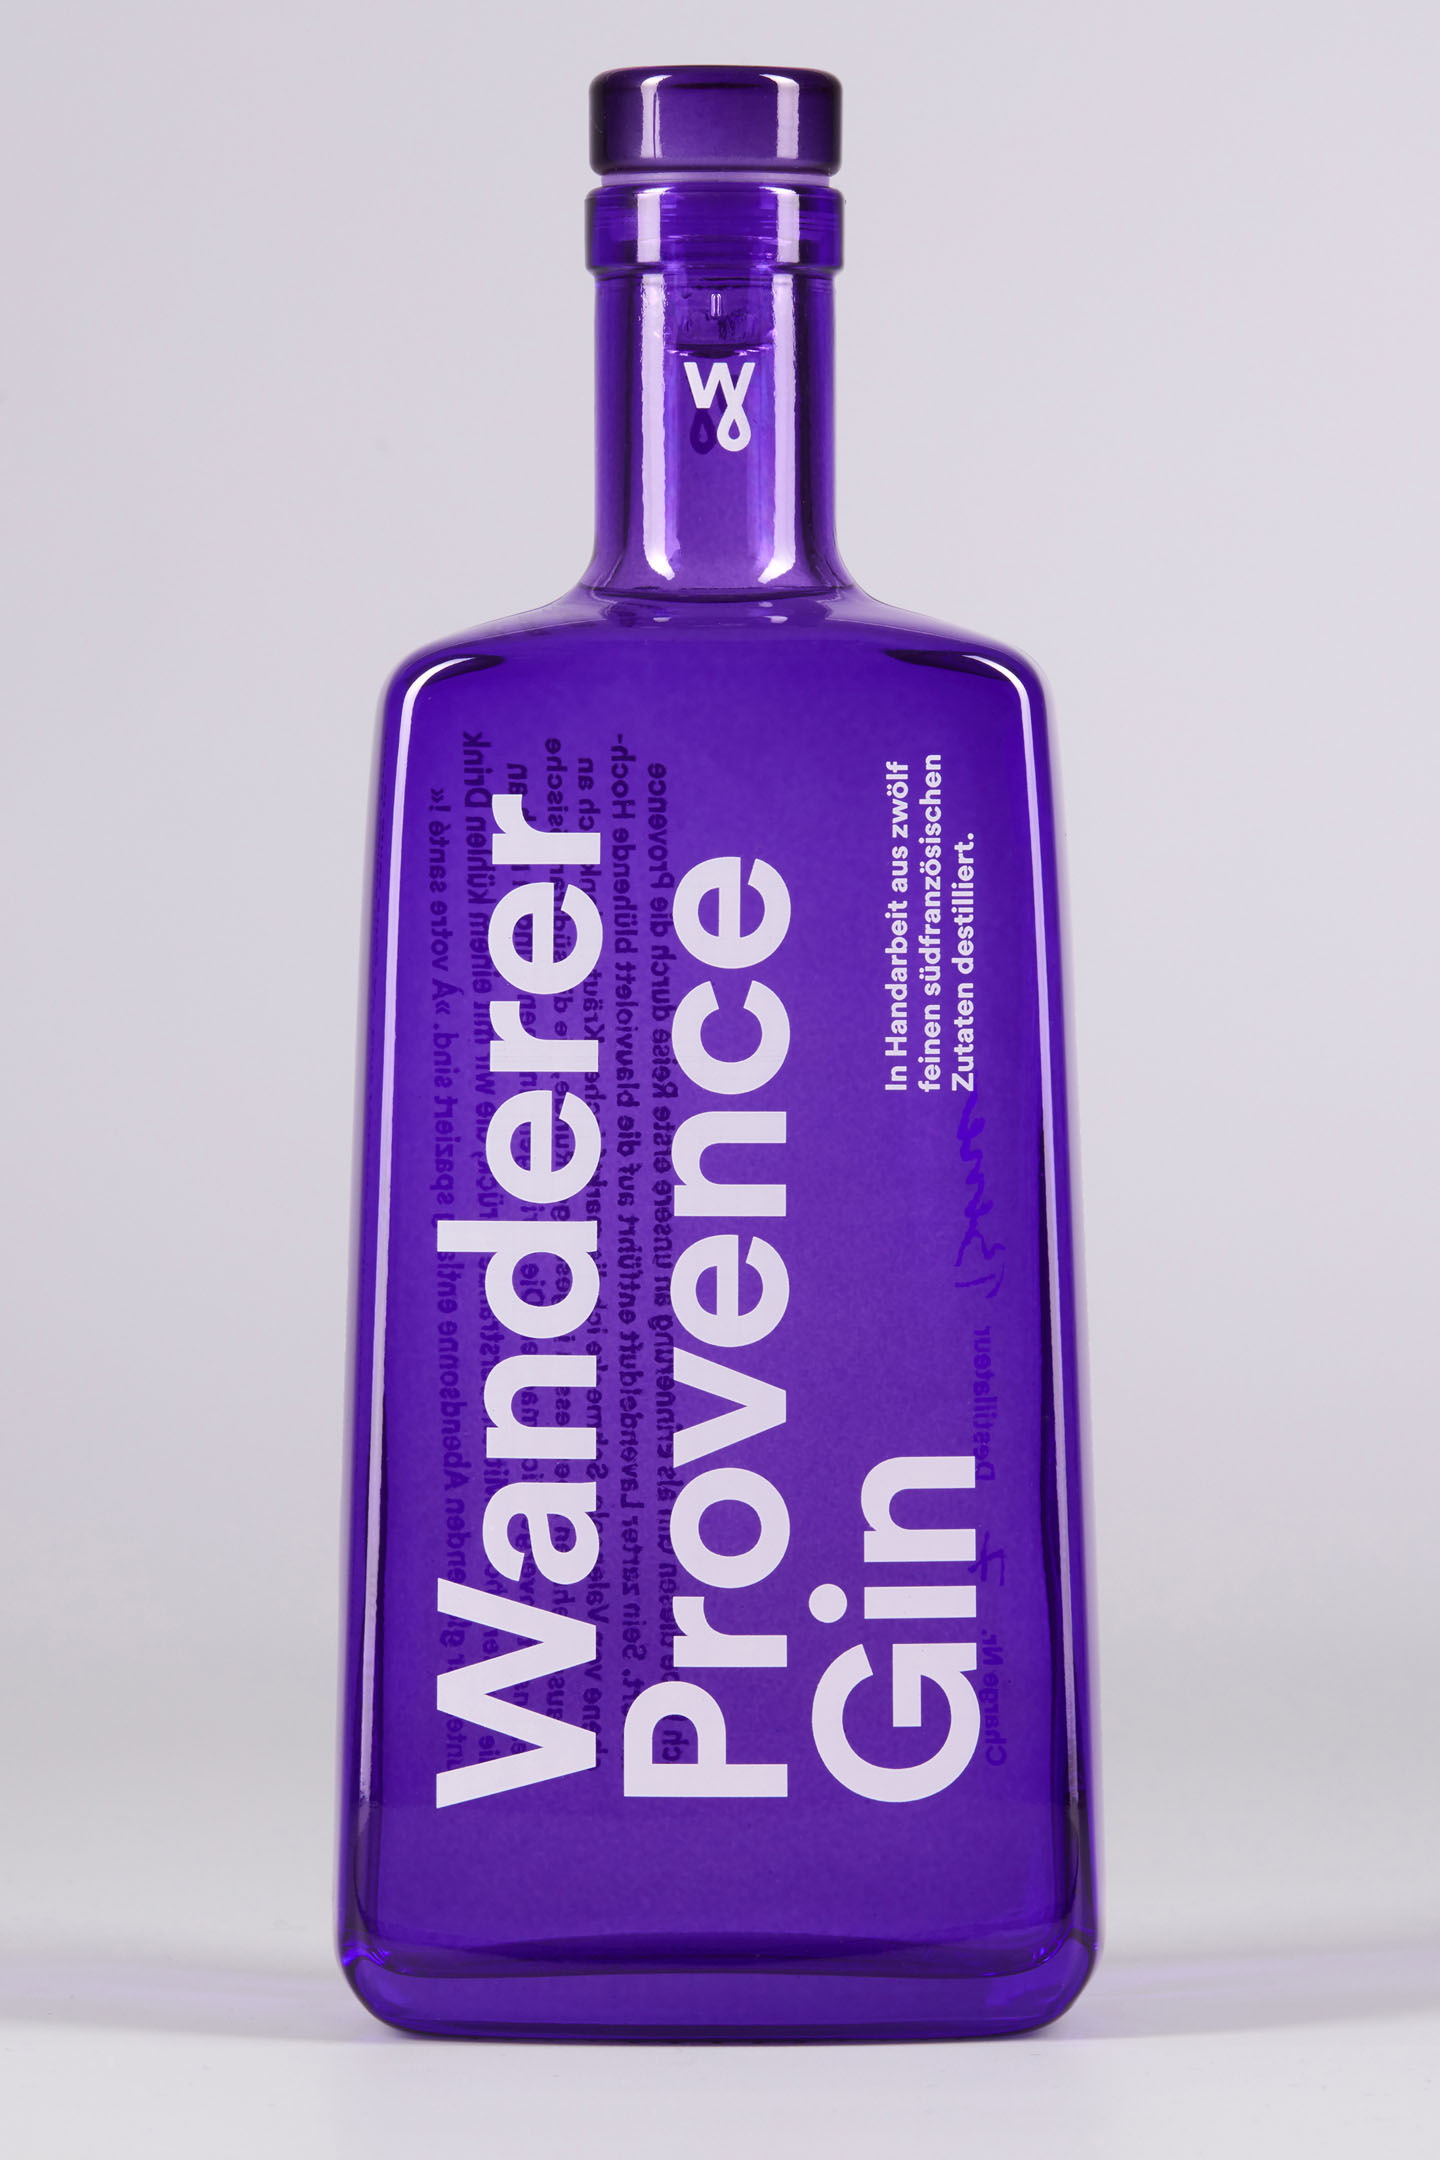 Packshot der Wanderer Provence Gin Flasche vor grauem Hintergrund.